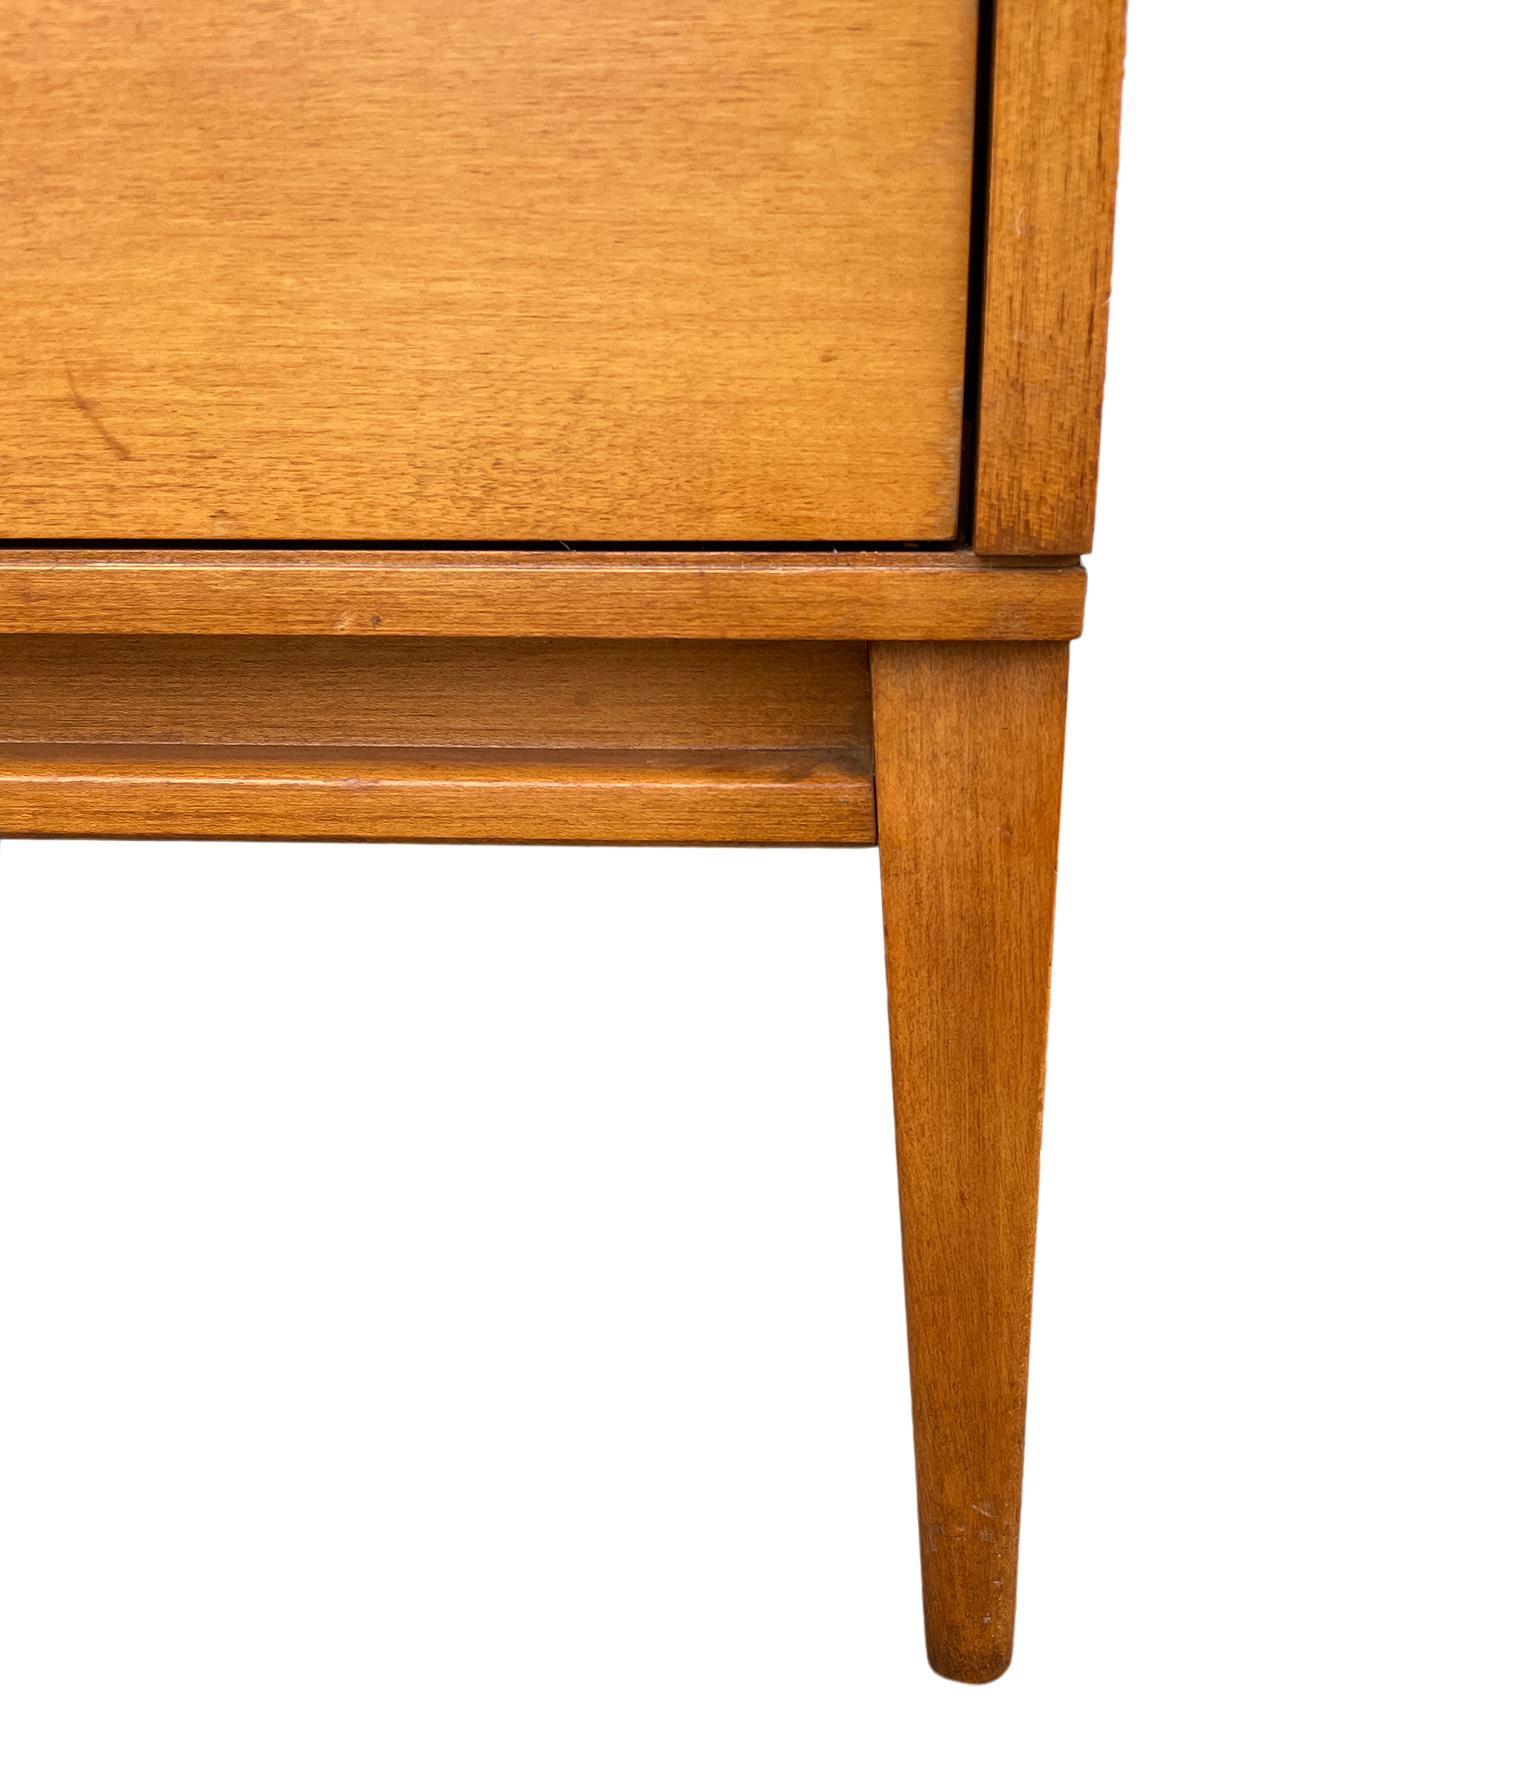 Midcentury Paul McCobb 8-Drawer Dresser Credenza #1507 Blonde Maple Brass Pulls 2